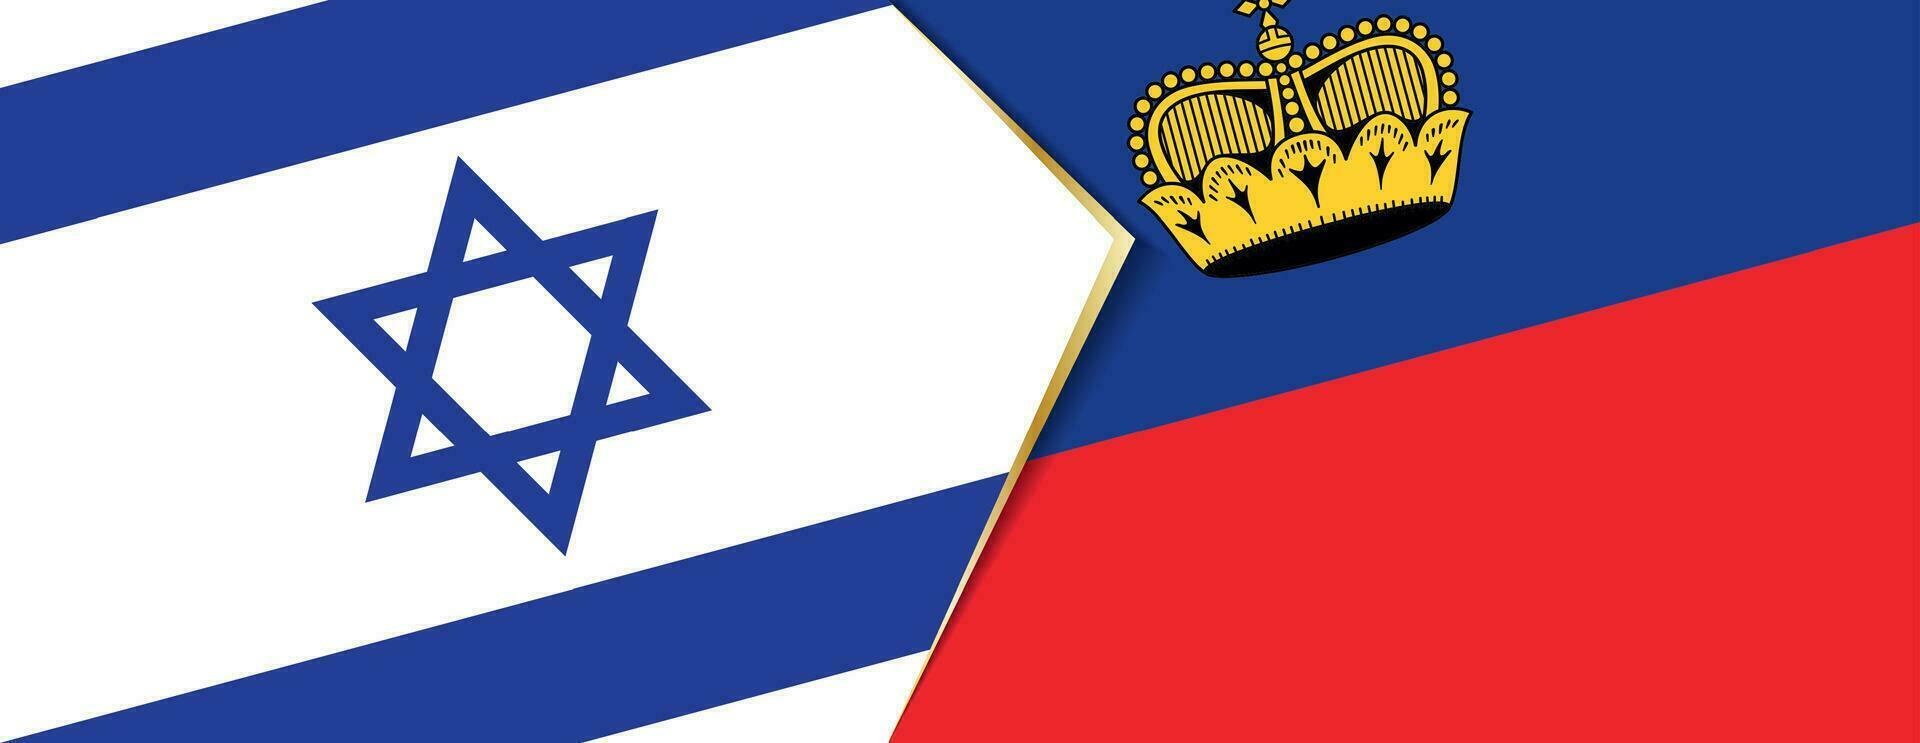 Israel y Liechtenstein banderas, dos vector banderas